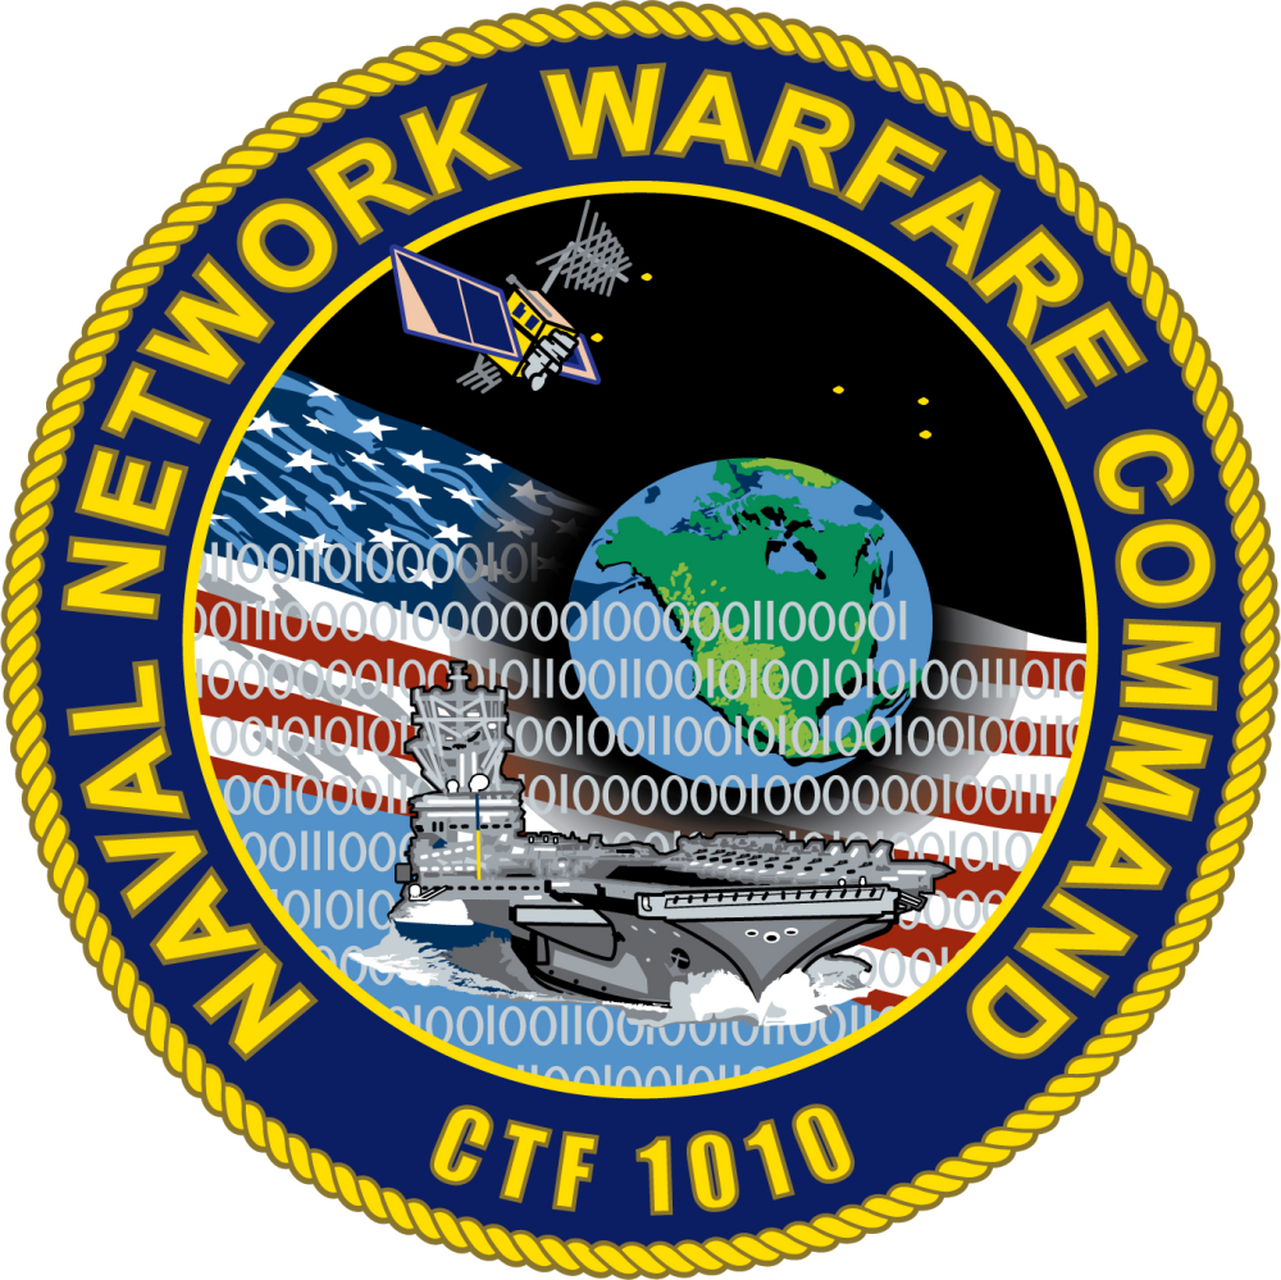 美国海军网络作战司令部 总部:维吉尼亚州诺福克小溪流海军两栖作战基